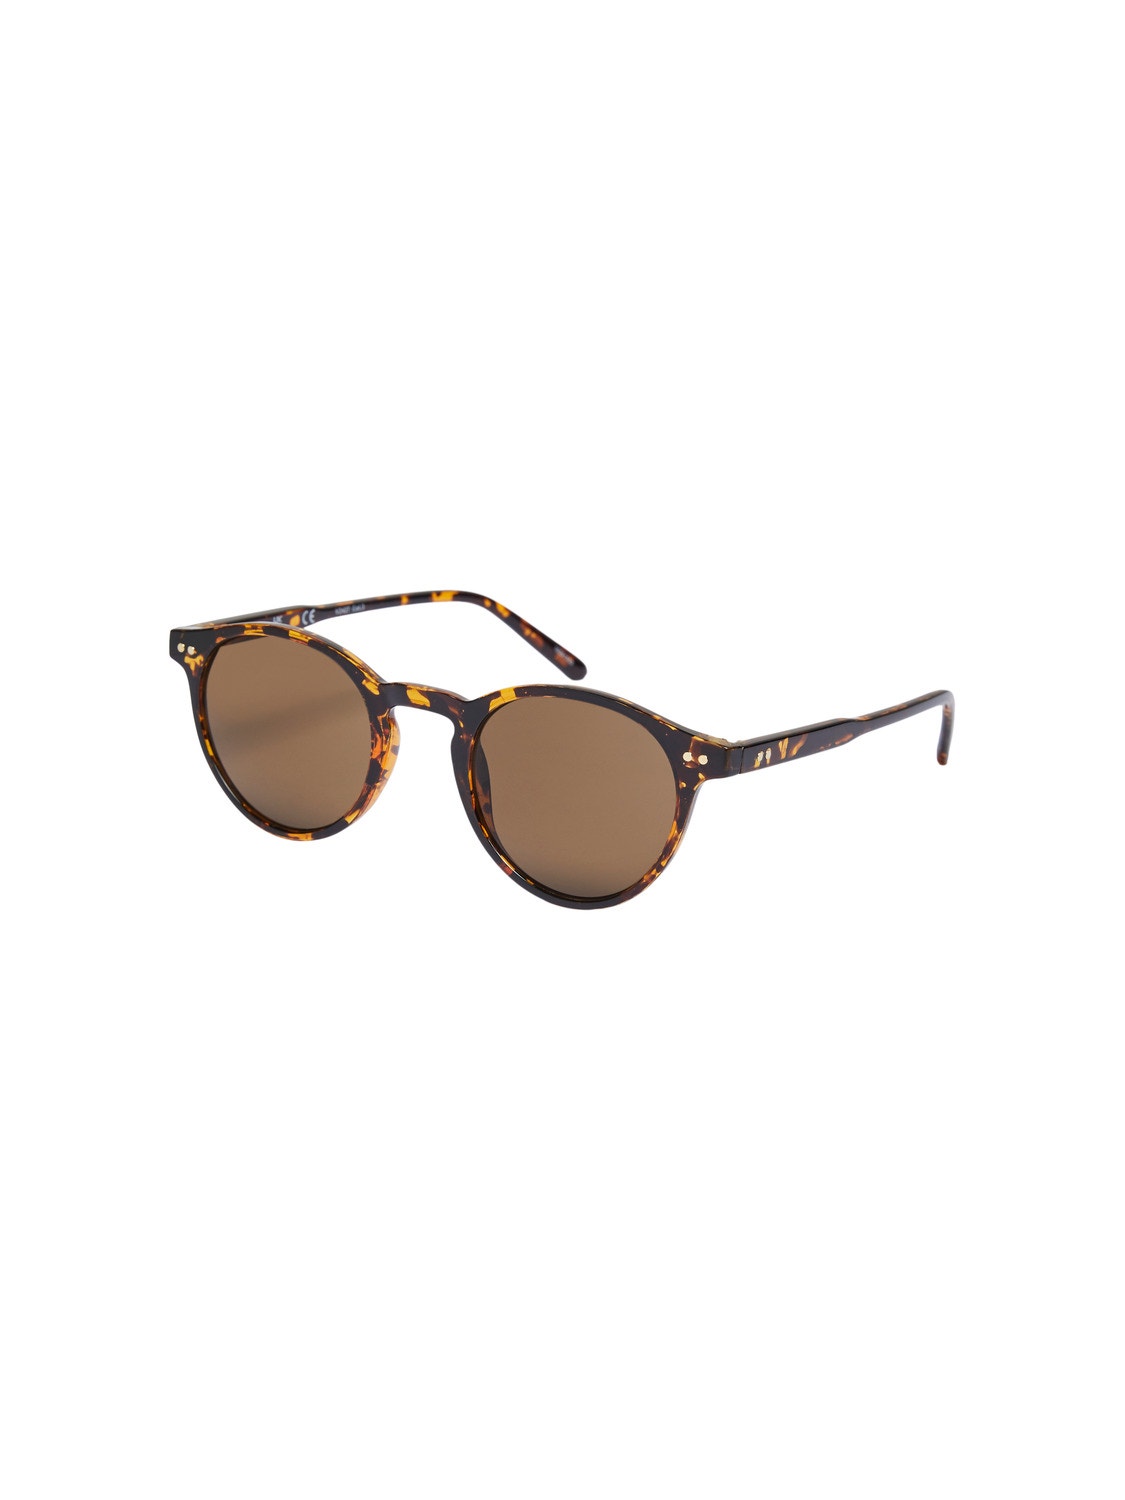 Vero Moda Gafas de sol -Chocolate Brown - 10261553